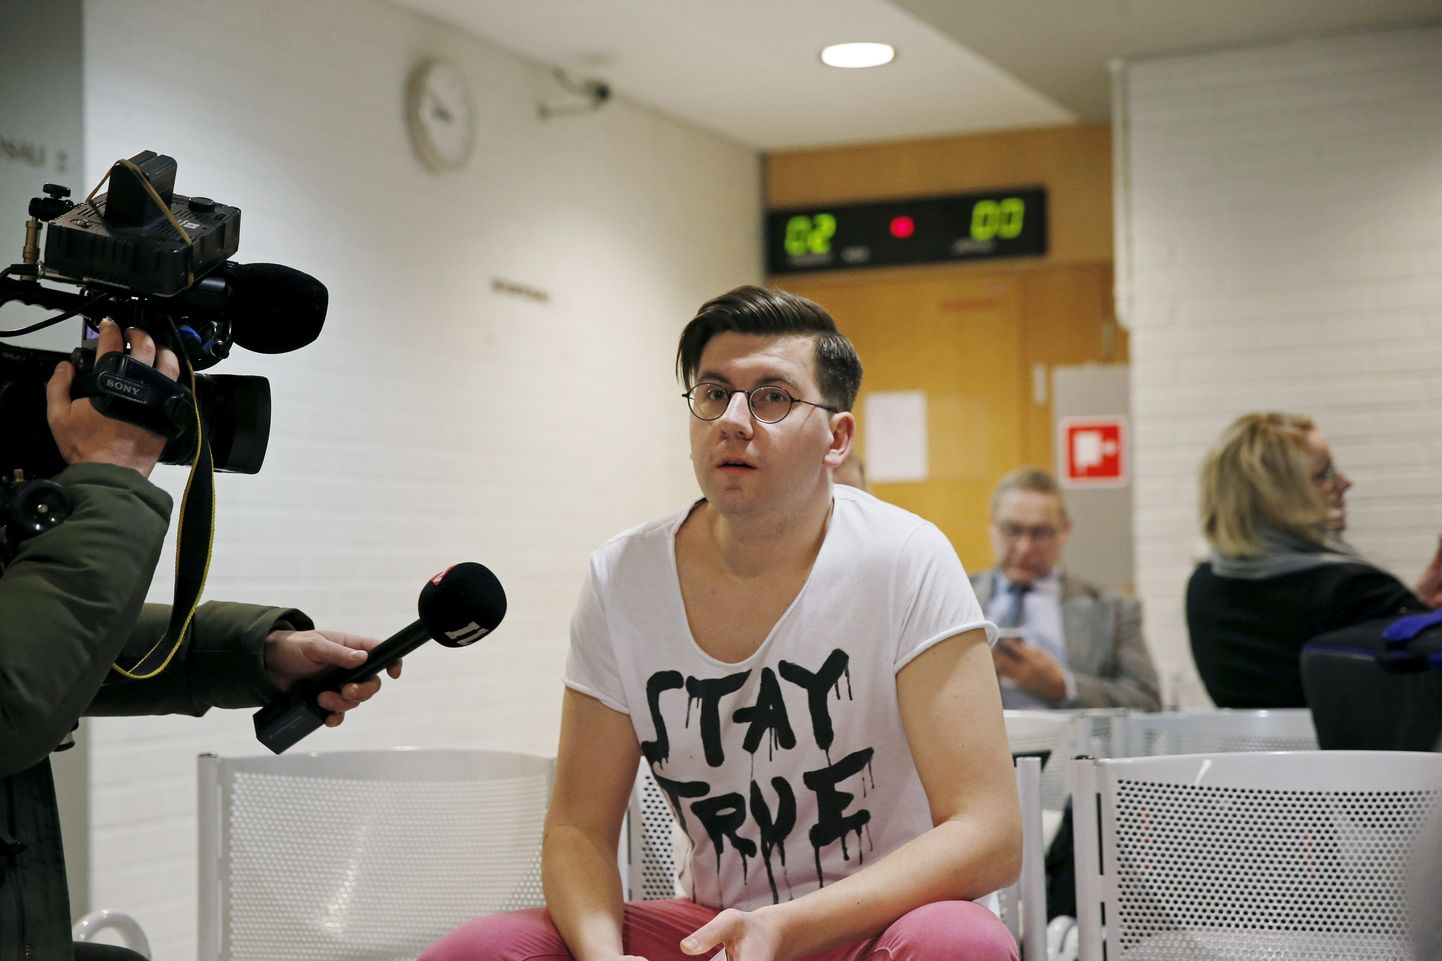 Põlissoomlaste noorpoliitik Sebastian Tynkkynen satub avalikkuse tähelepanu alla keskmisest tihem. Käesoleva aasta jaanuaris tuli tal ütlusi anda Oulu piirkonnakohtus, kus endisele erakonna noortekogu juhile oli esitatud süüdistus Soome moslemite vastase vaenu õhutamises.